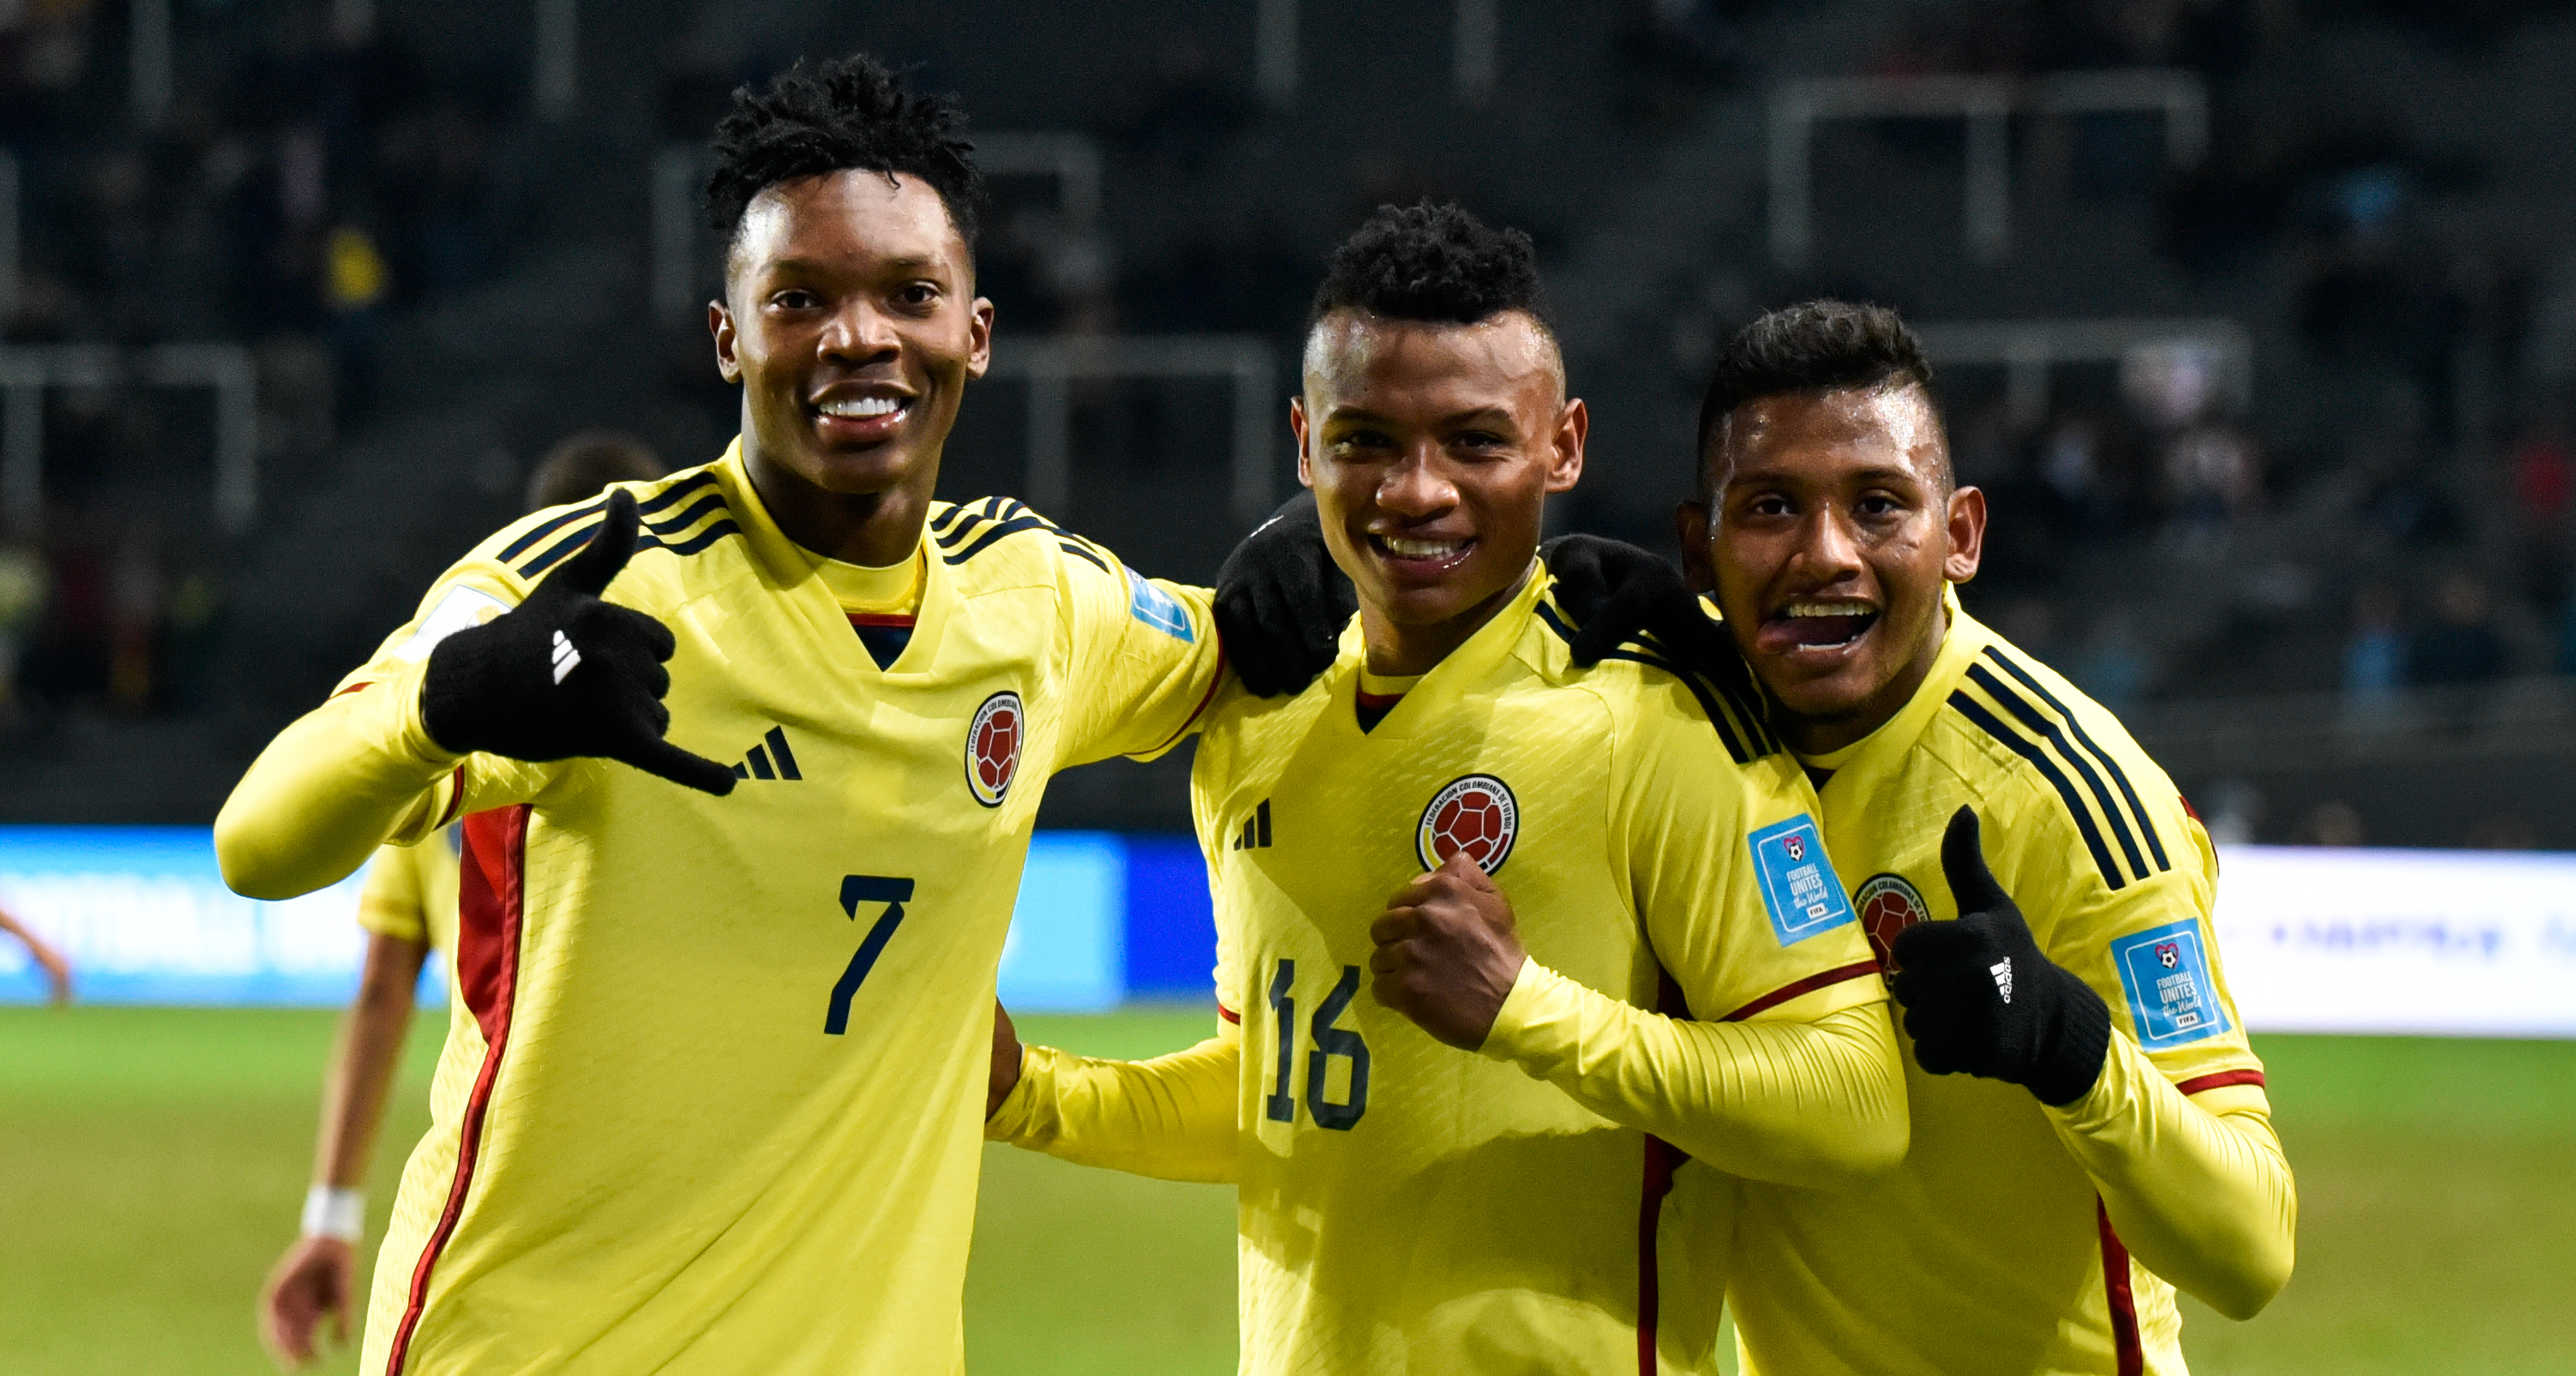 Este es el gol de la selección Colombia que está entre los mejores de la fase de grupos del Mundial sub-20, según la FIFA